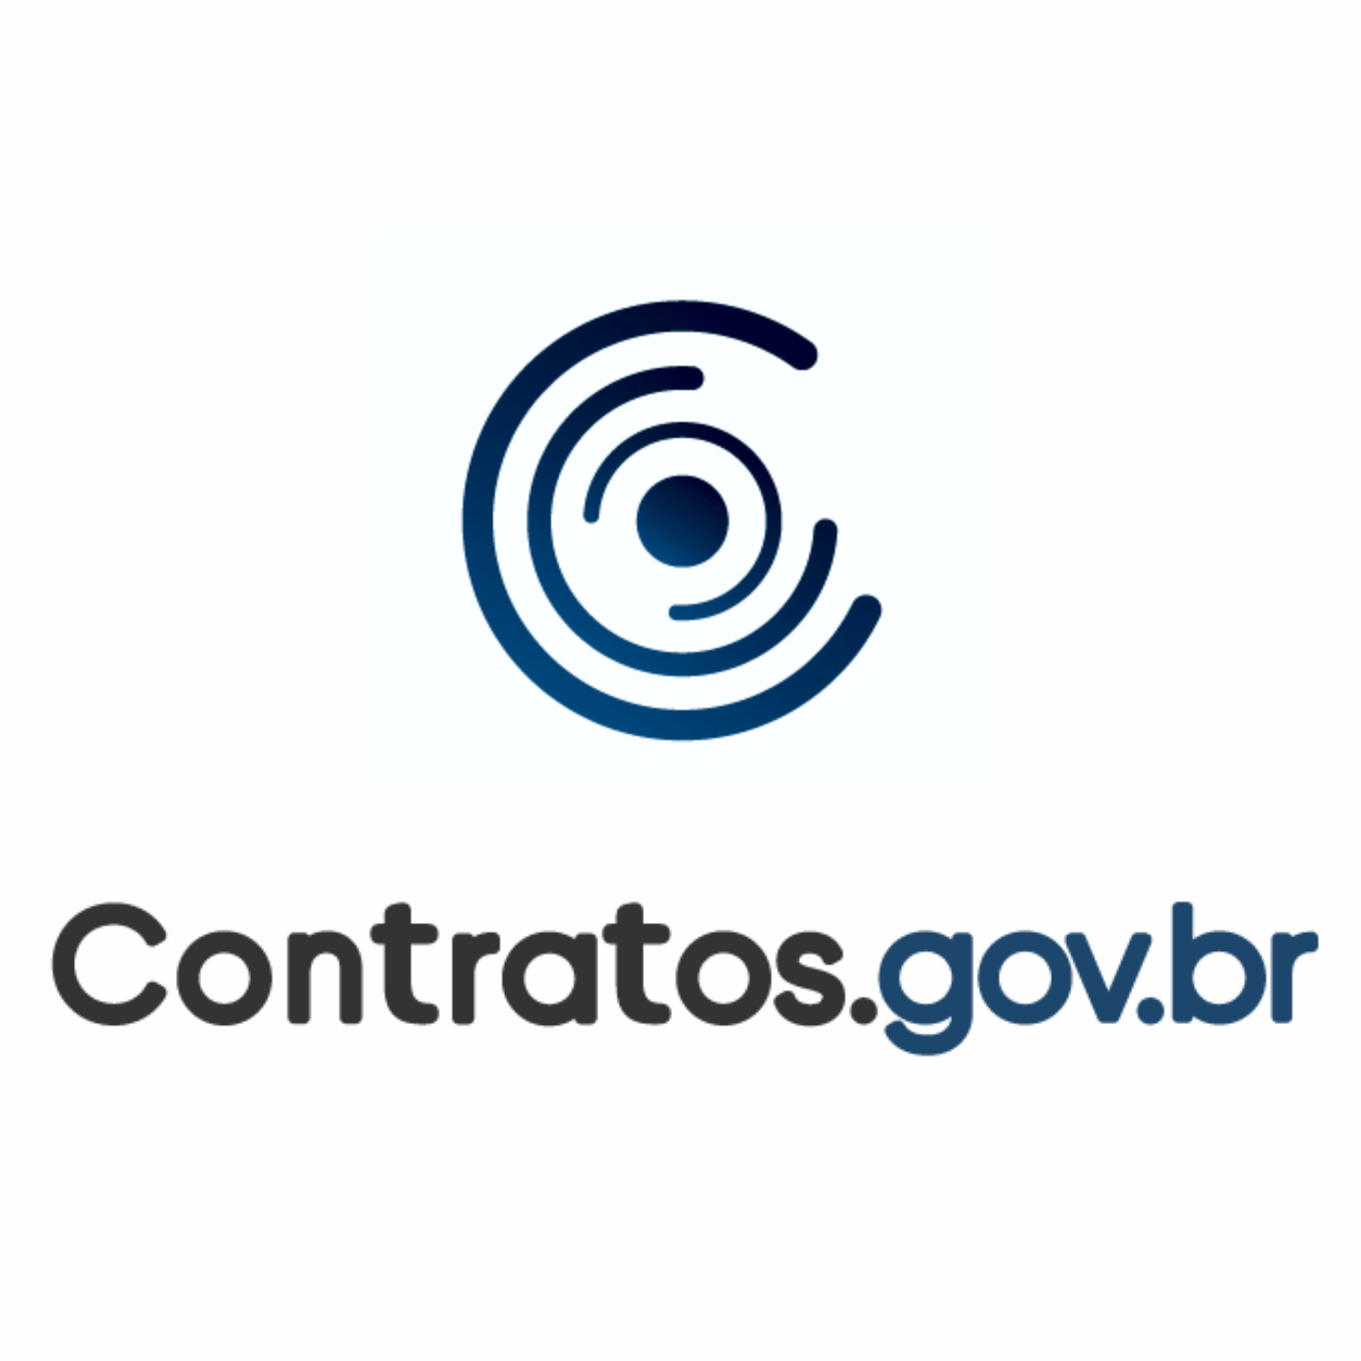 Treinamento Contratos.gov.br - Gestão Orçamentária e Financeira - IFES